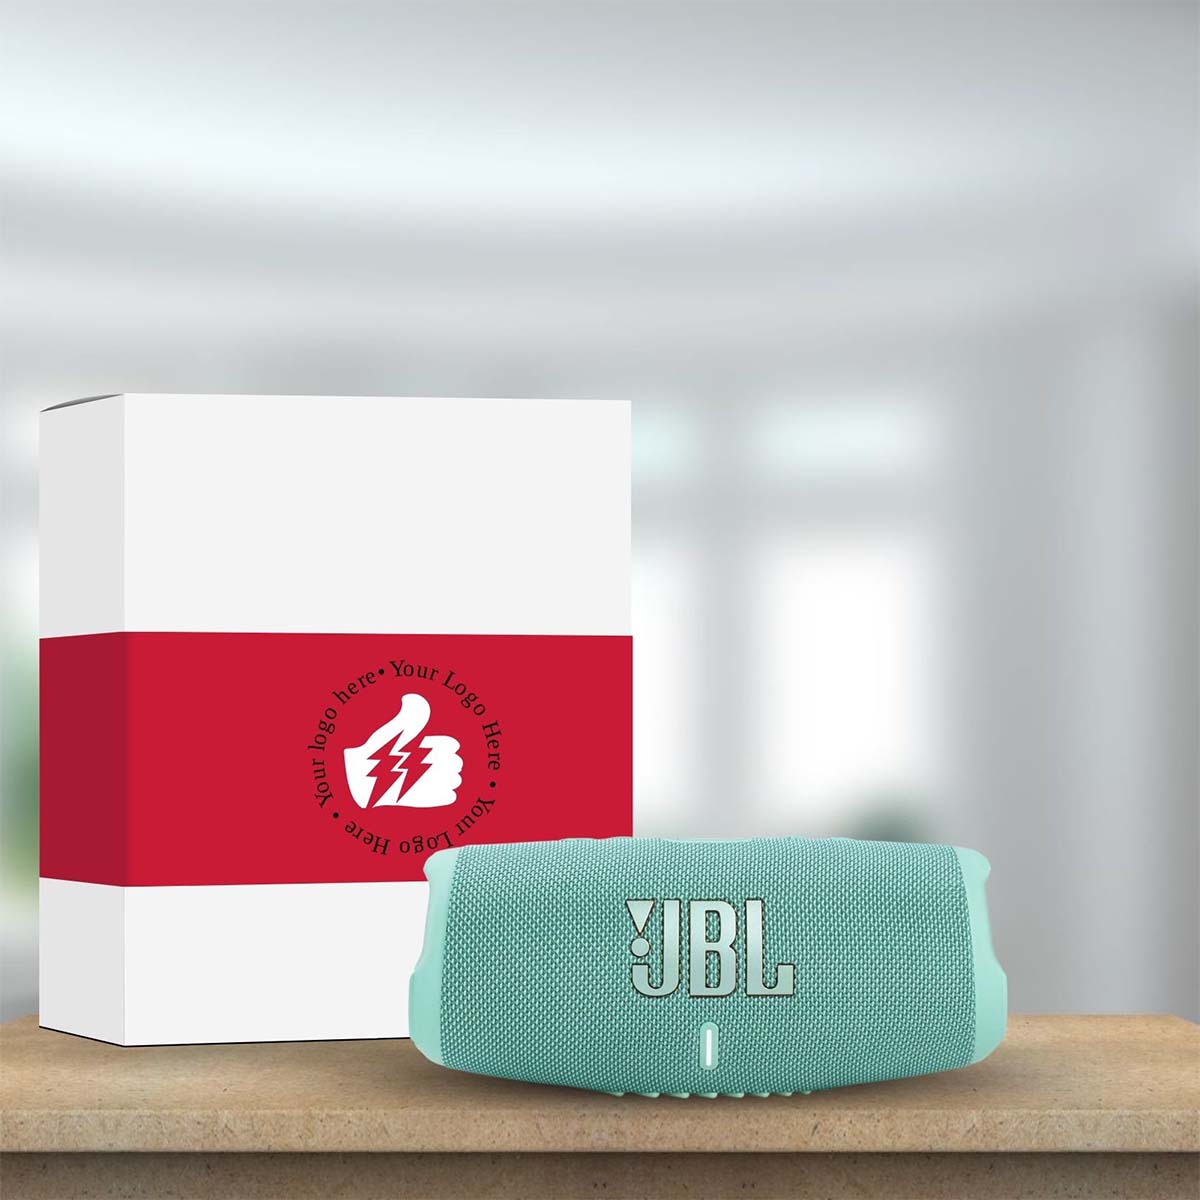 
                  
                    JBL Charge 5 Portable Waterproof Bluetooth Speaker
                  
                